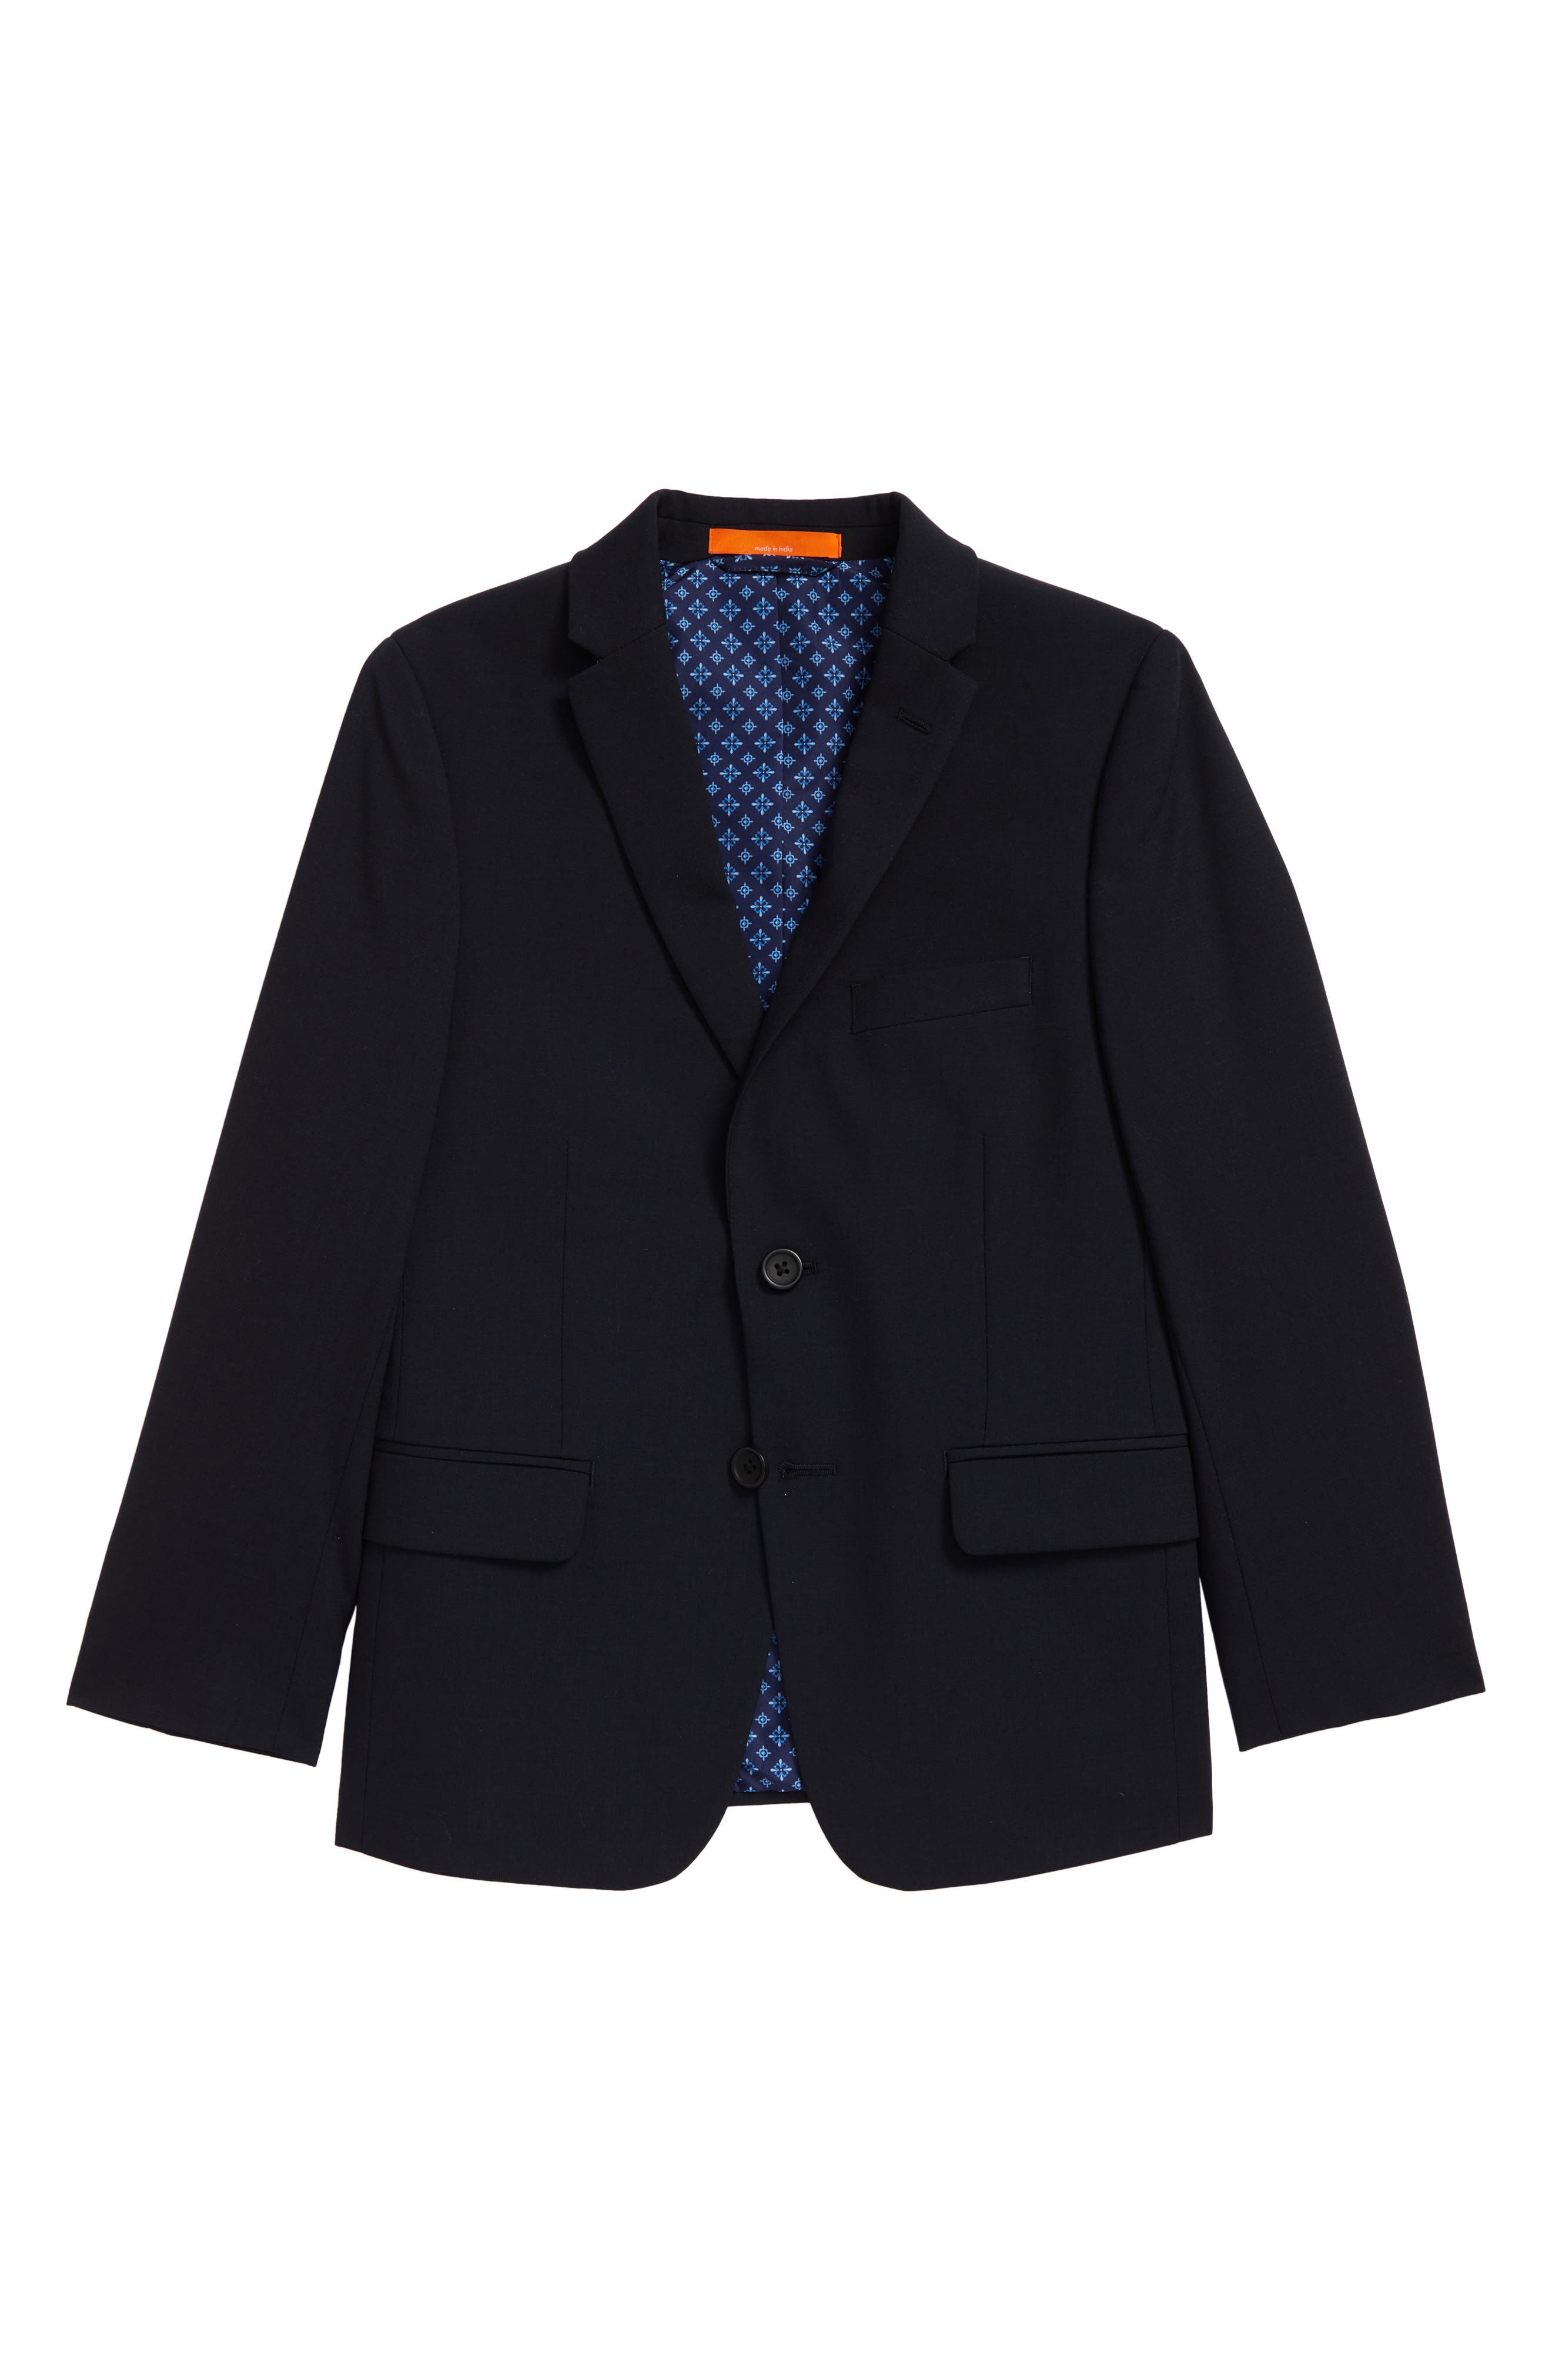 NEW Boys Suit Jacket